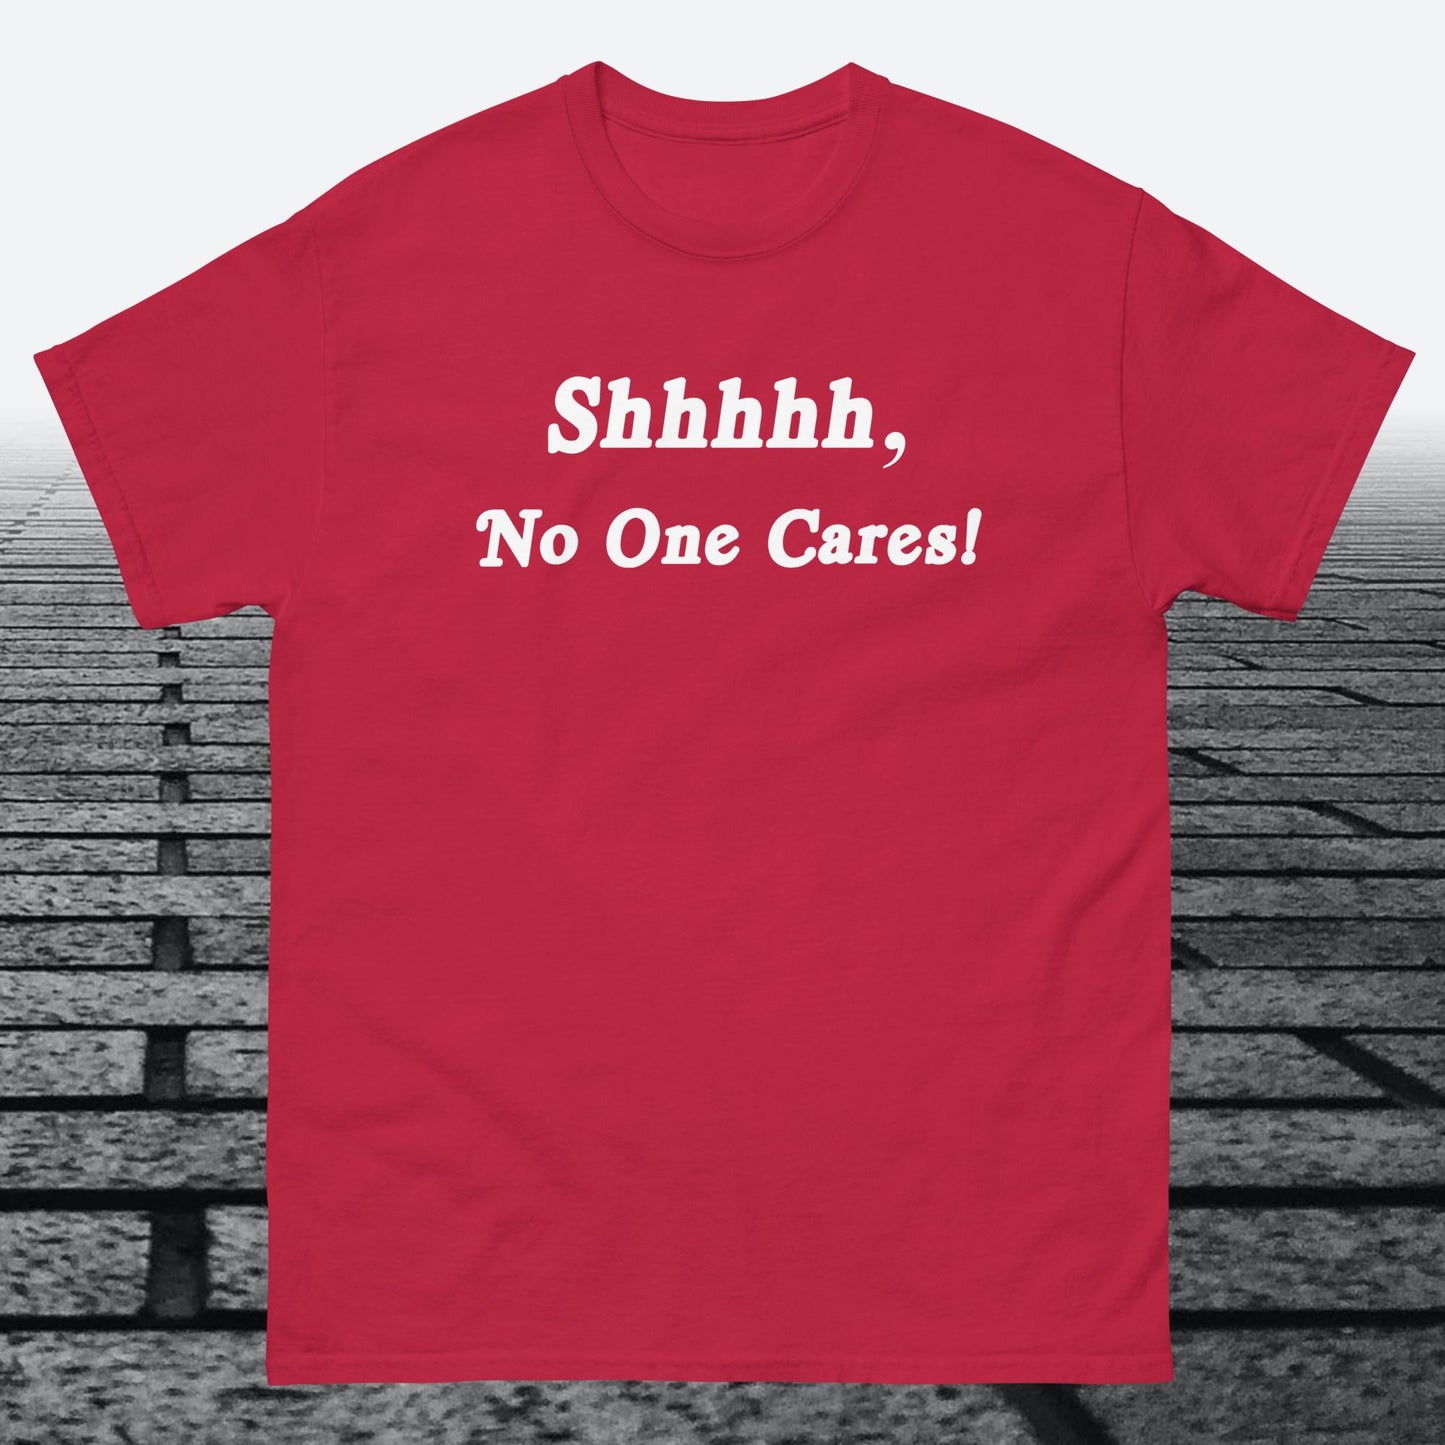 Shhhhh, No One Cares, Cotton T-shirt